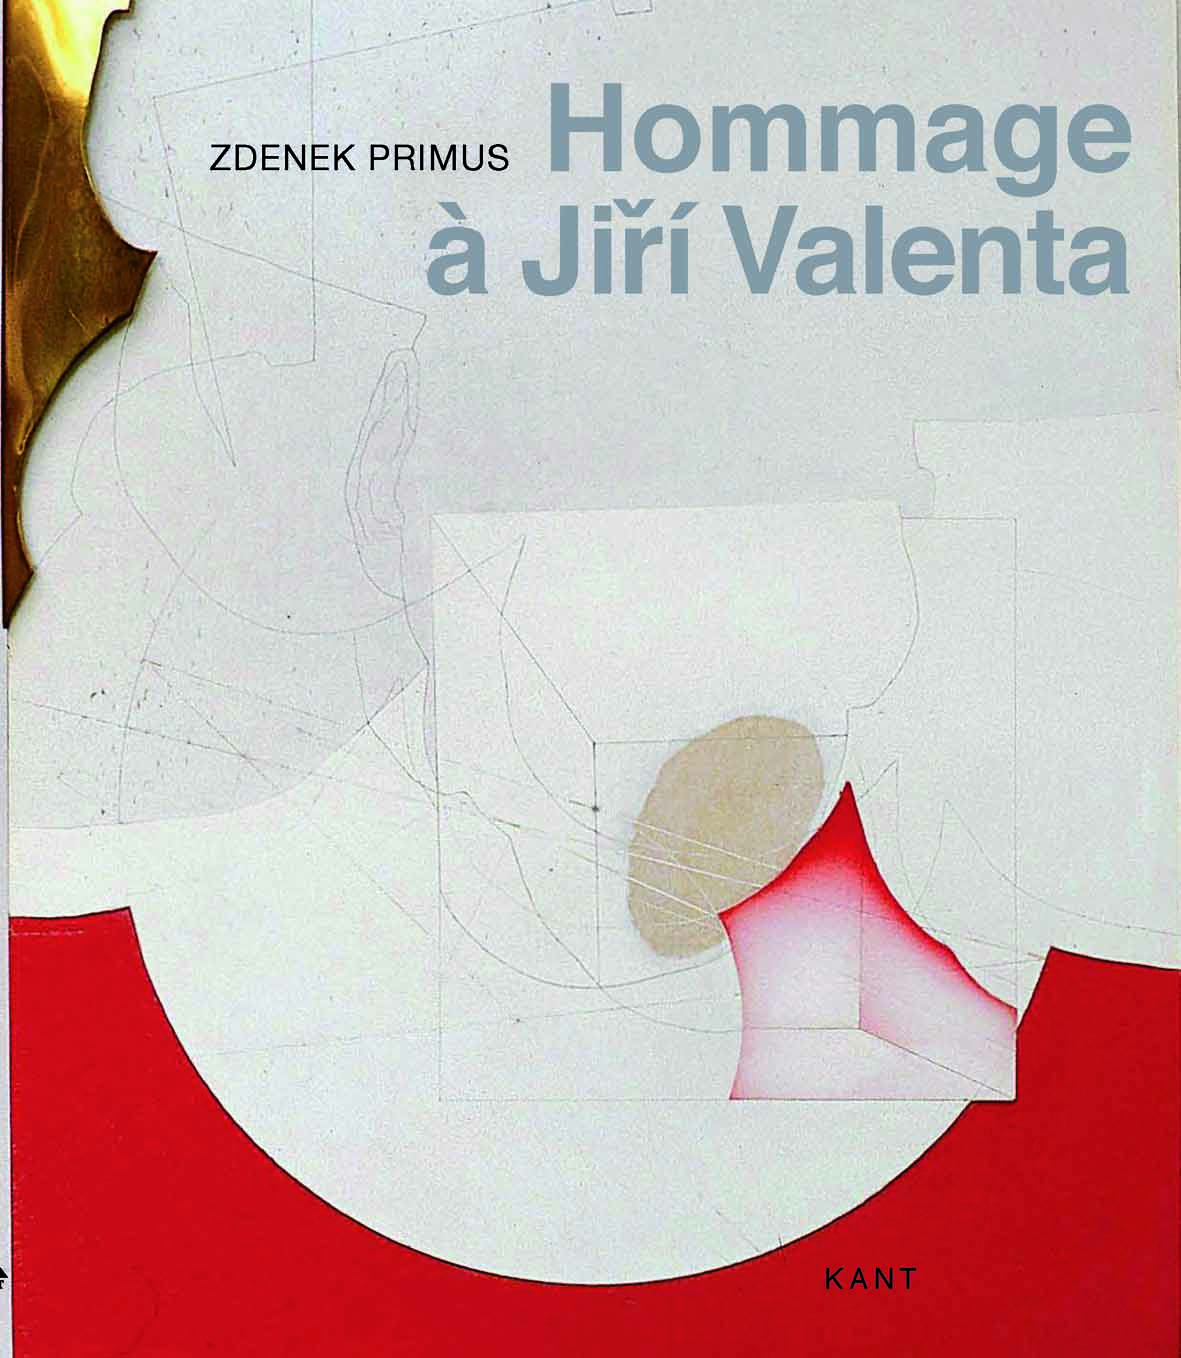 Hommage à Jiří Valenta